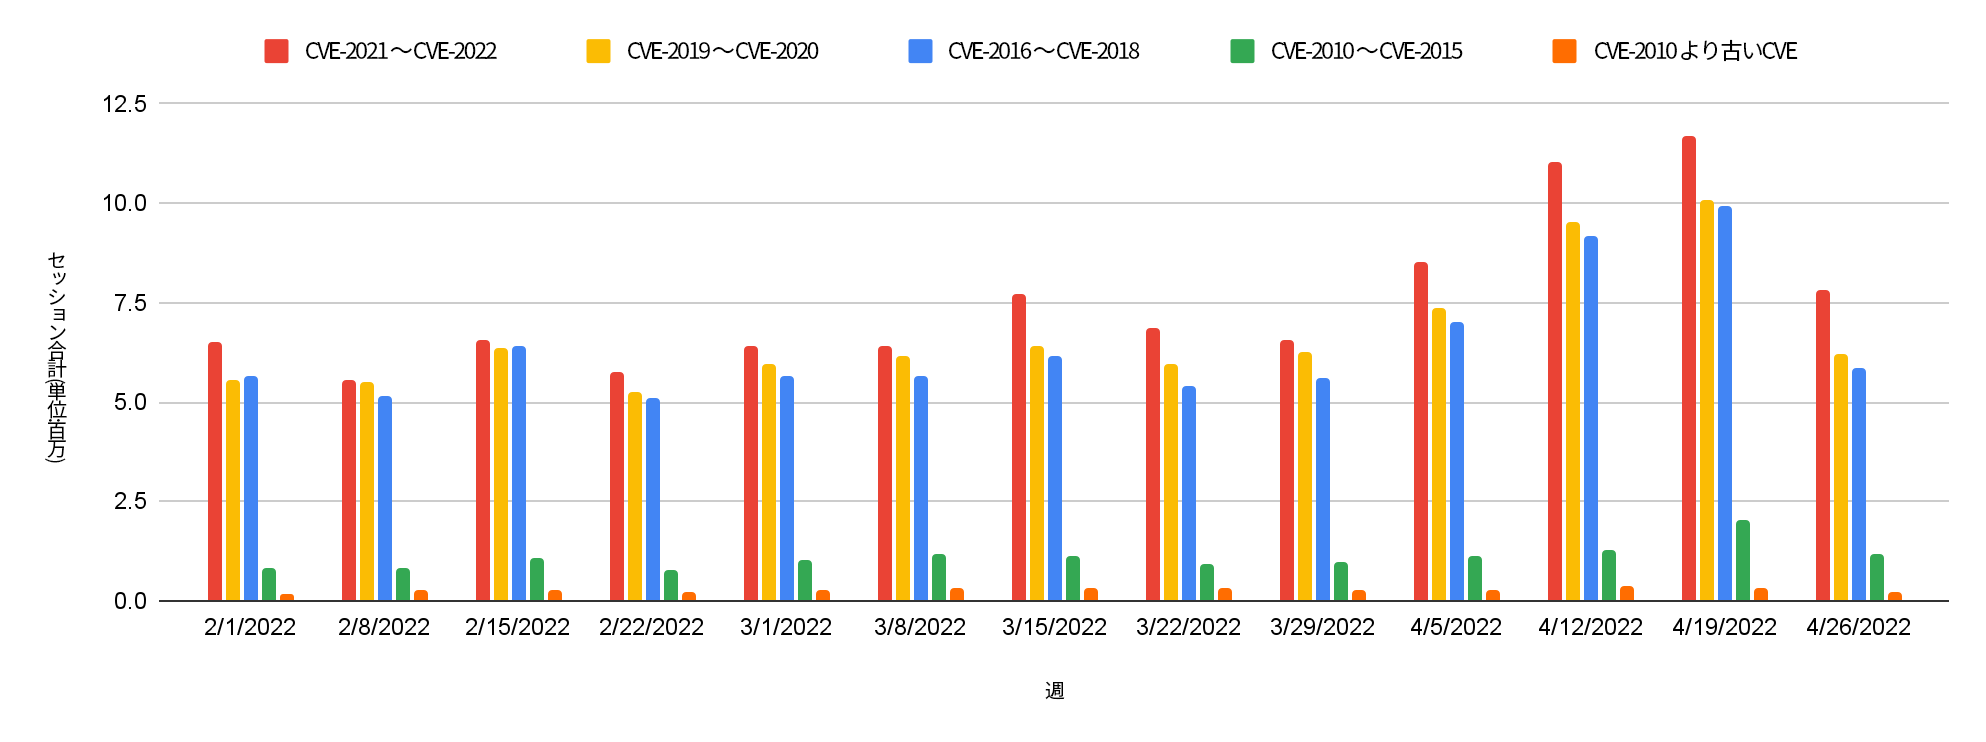 赤＝2021-2022年公開のCVE、黄＝2019-2020年公開のCVE、青＝2016-2018年公開のCVE、緑＝2010-2015年公開のCVE、オレンジ＝2010年より前に公開されたCVE。この棒グラフは、2022年2月から4月の週ごと(単位:百万)のセッションの攻撃深刻度分布を示しています。 